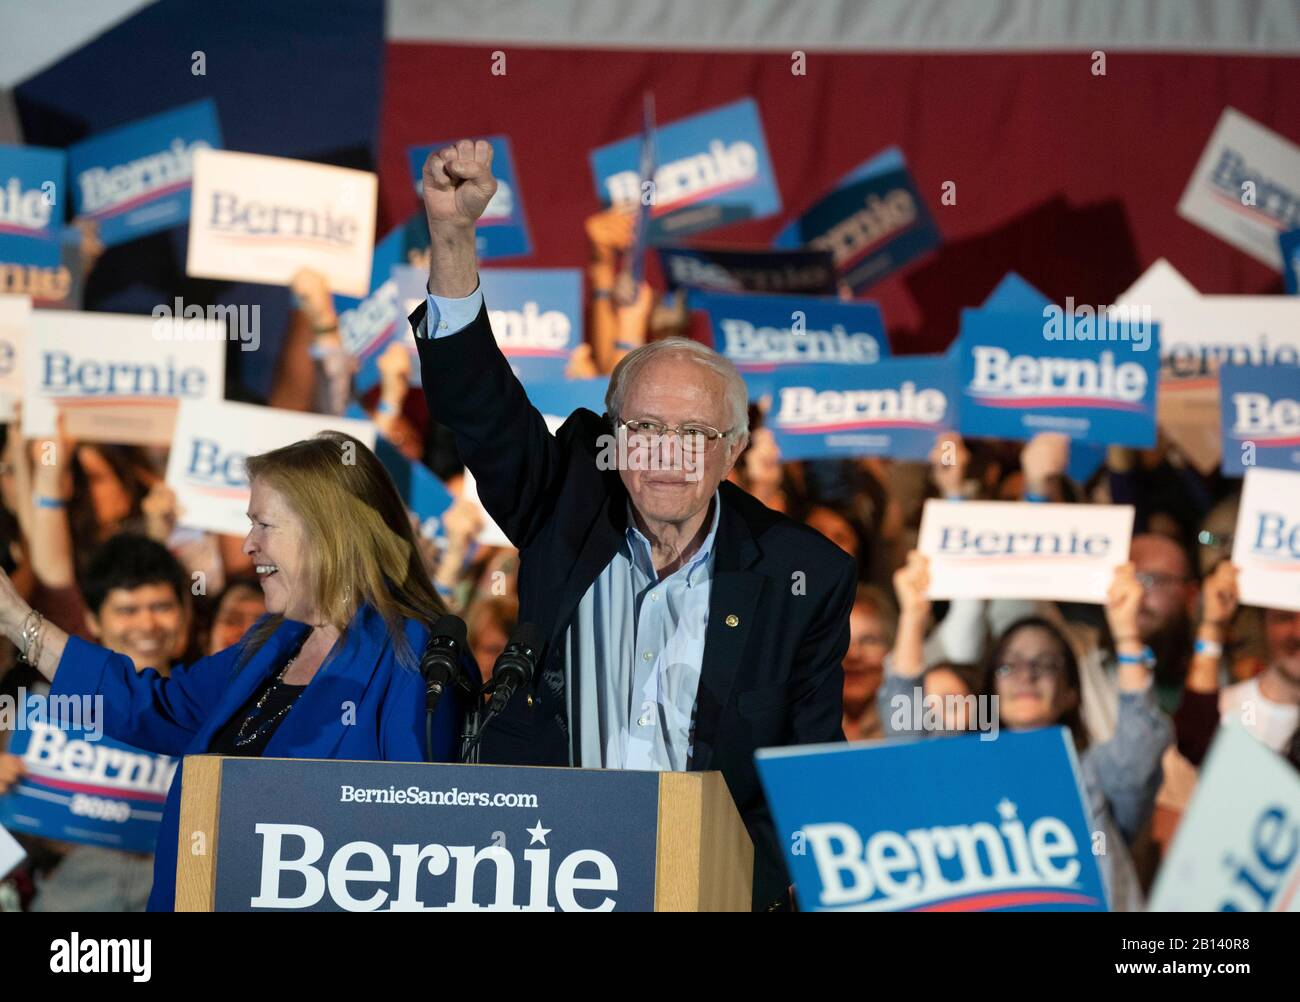 Il candidato democratico alla presidenza Bernie Sanders, e sua moglie, Jane, al suo fianco, si sono mobilitati per una folla entusiasta in occasione di un raduno elettorale presso la Cowboys Dance Hall di San Antonio, Texas. Foto Stock